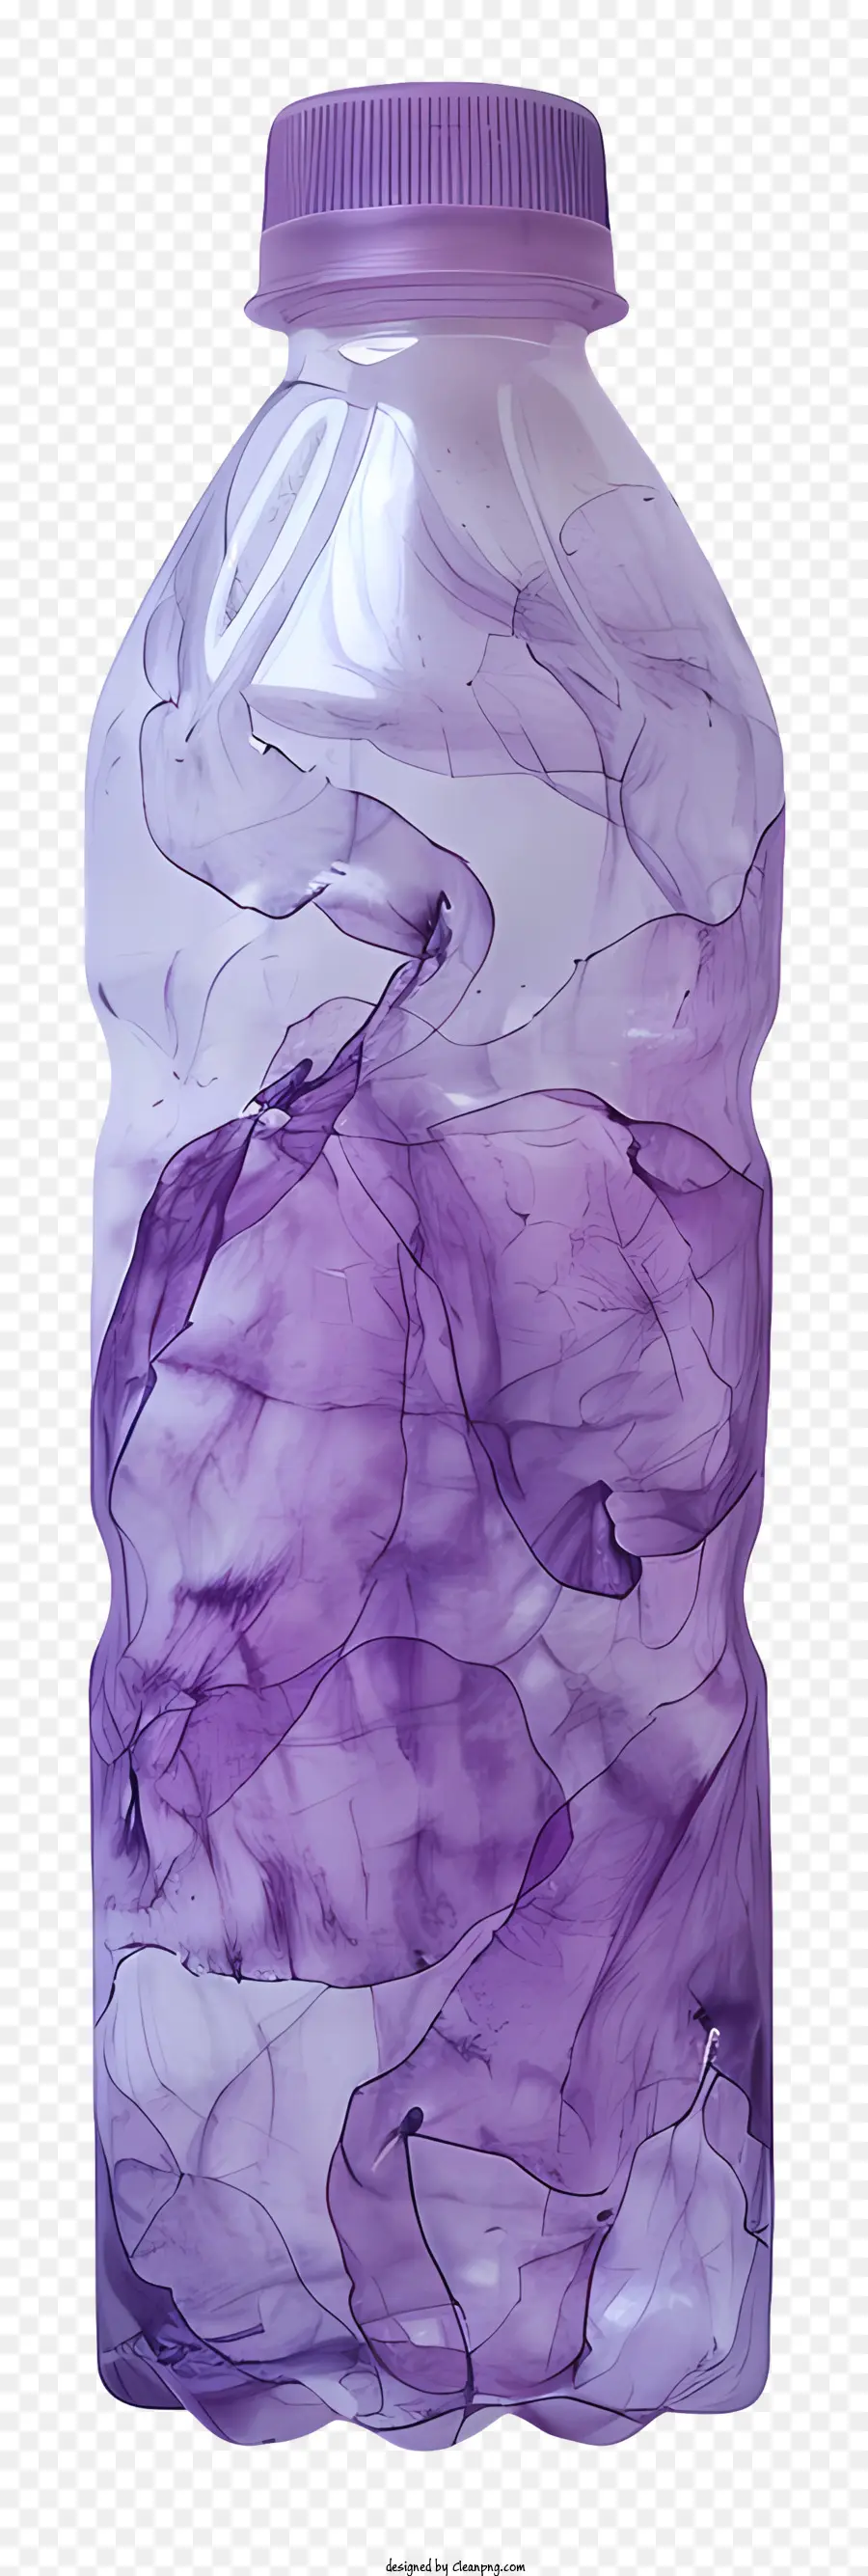 Kunststoff Flasche - Lila Flüssigkeit in transparenter röhrförmiger Flasche